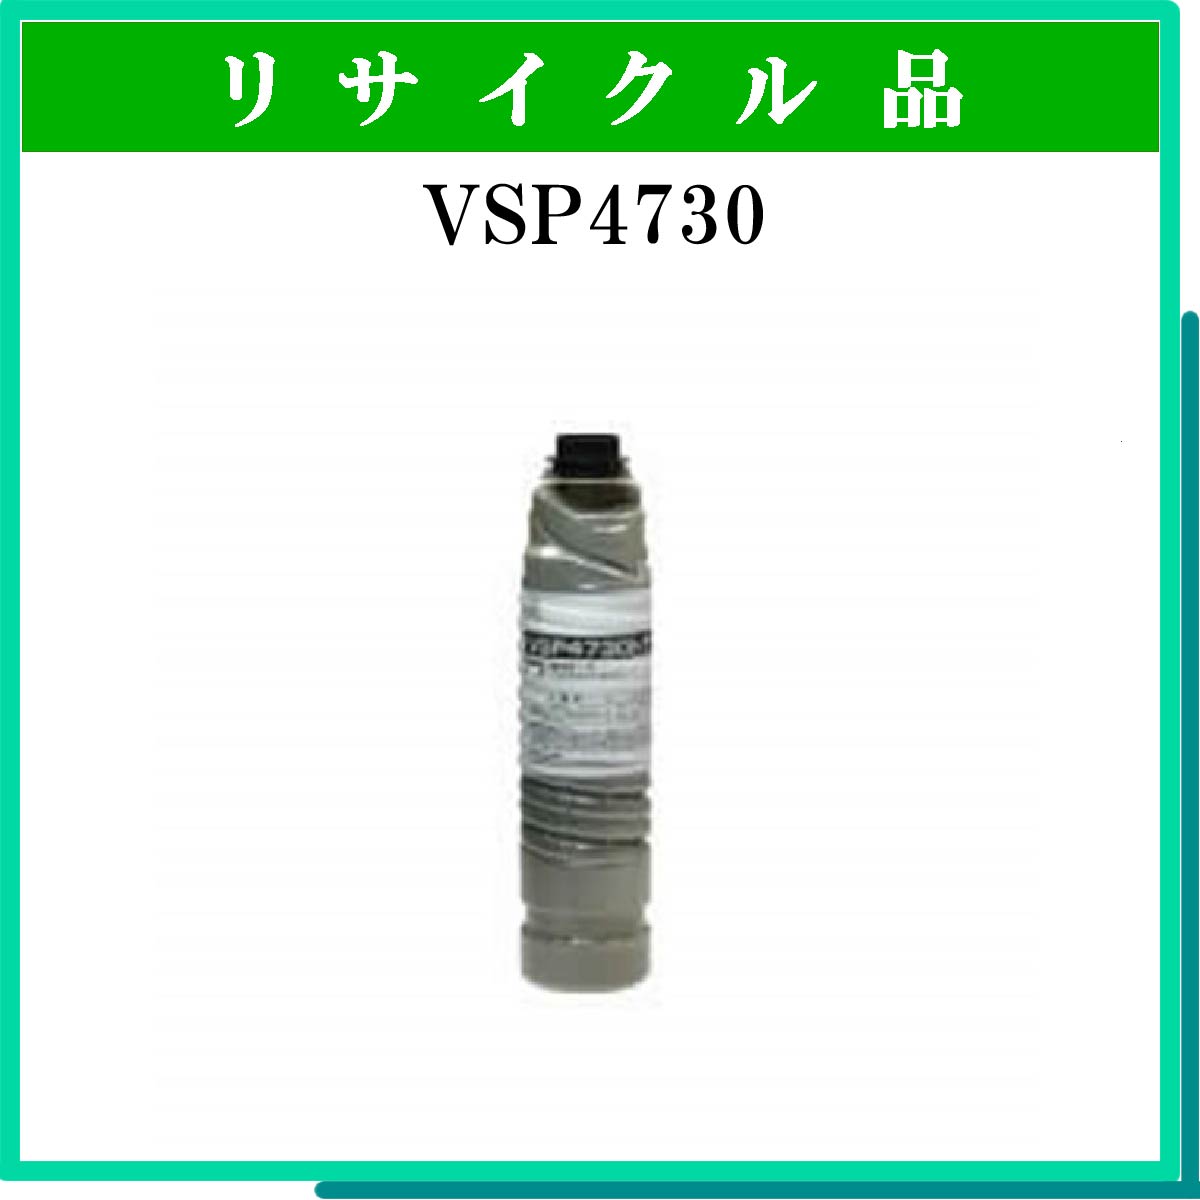 VSP4730